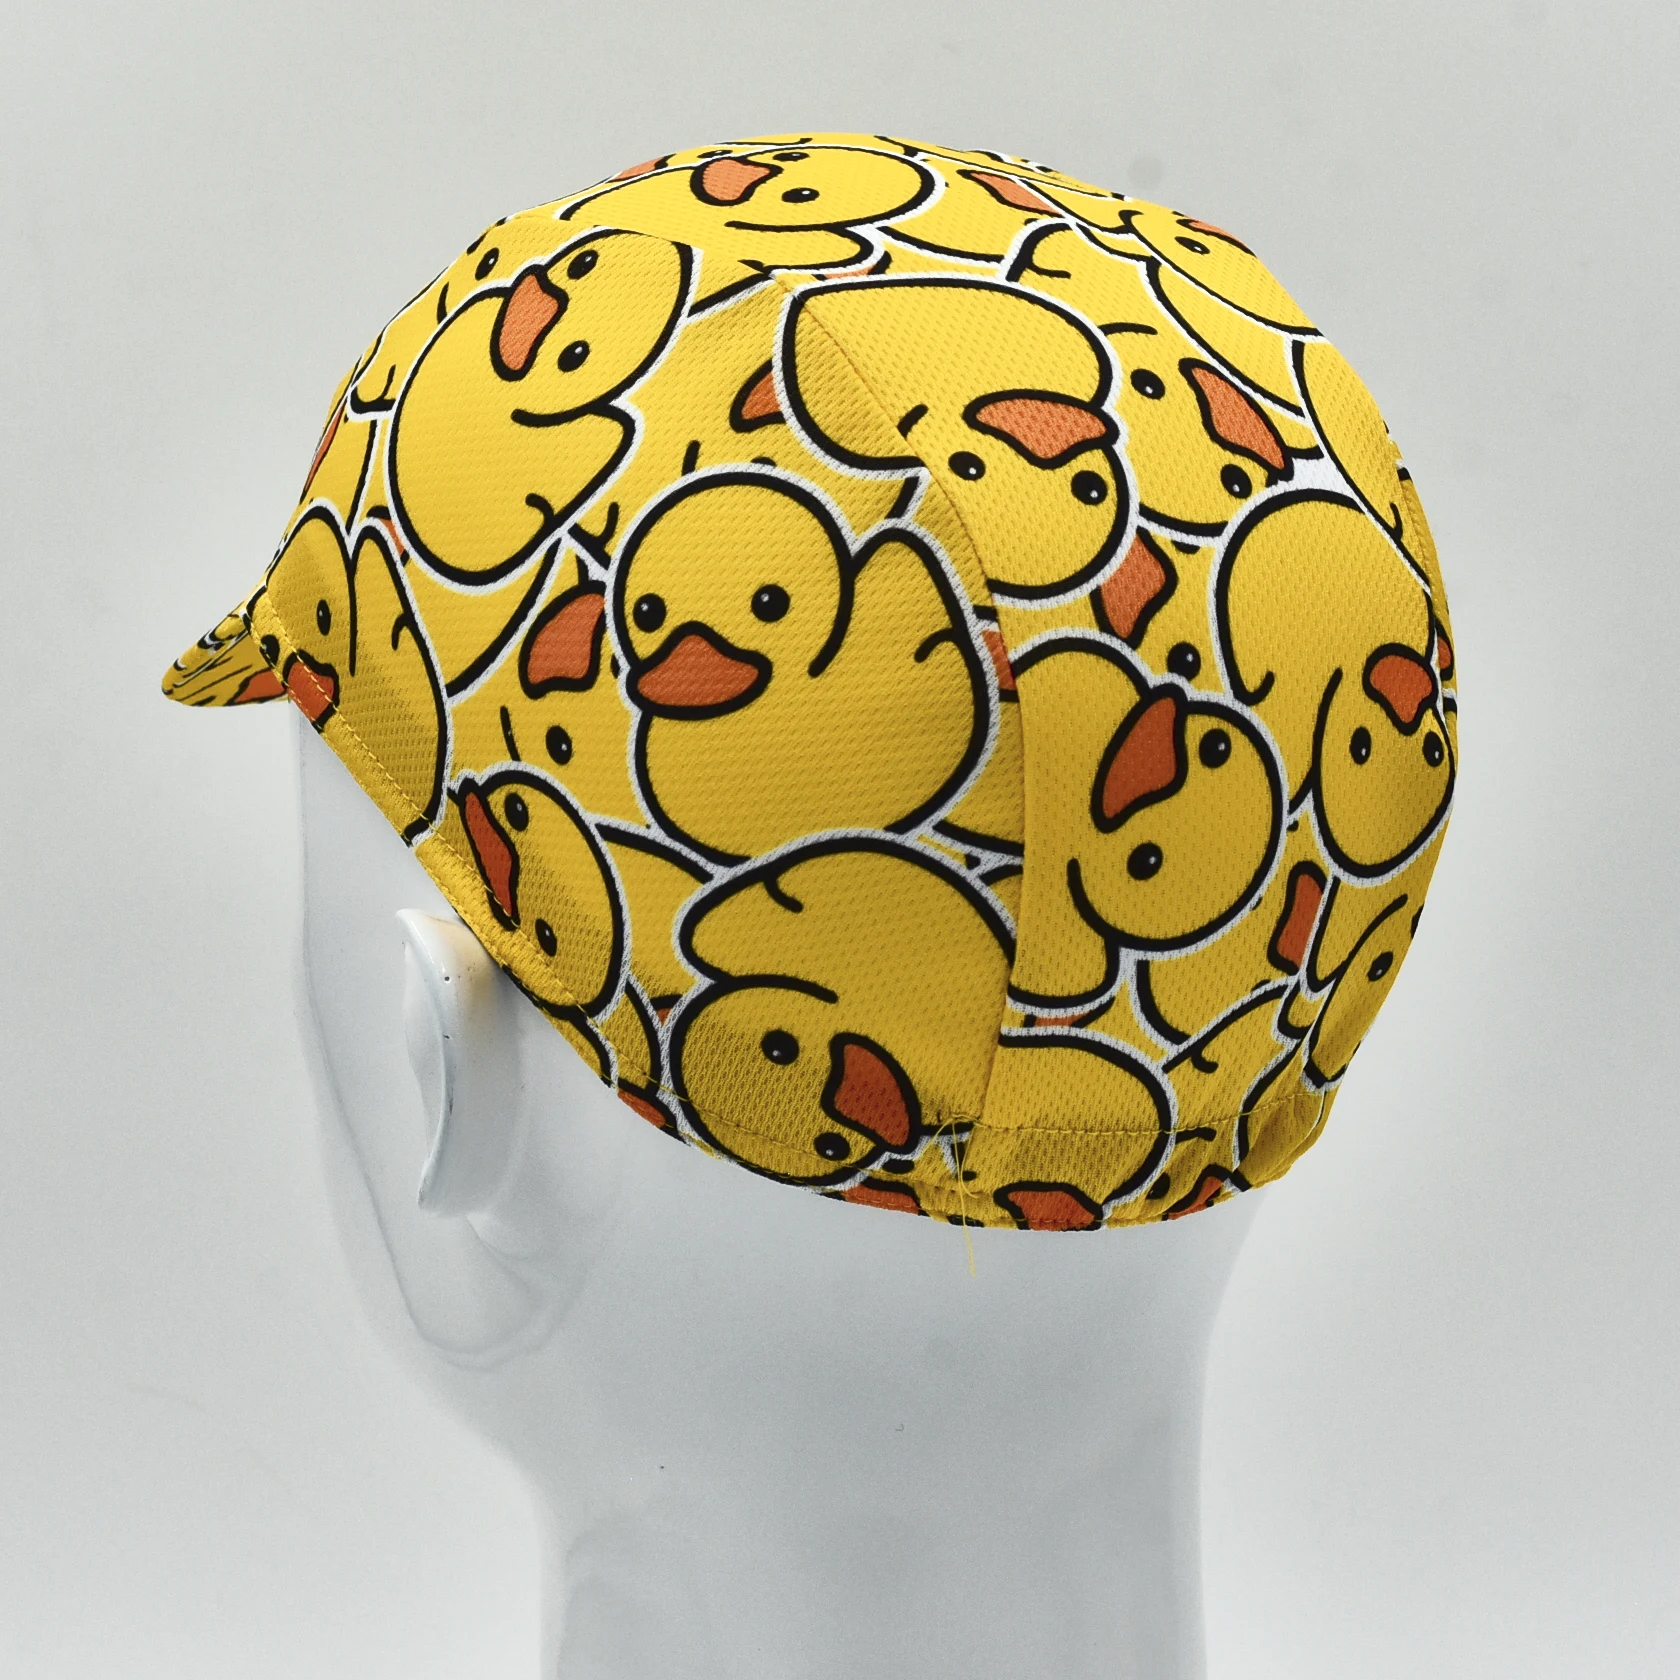 Велосипедная кепка Little Yellow Duck, цветная велосипедная кепка, кепка для бега, спортивная кепка на открытом воздухе Изображение 2